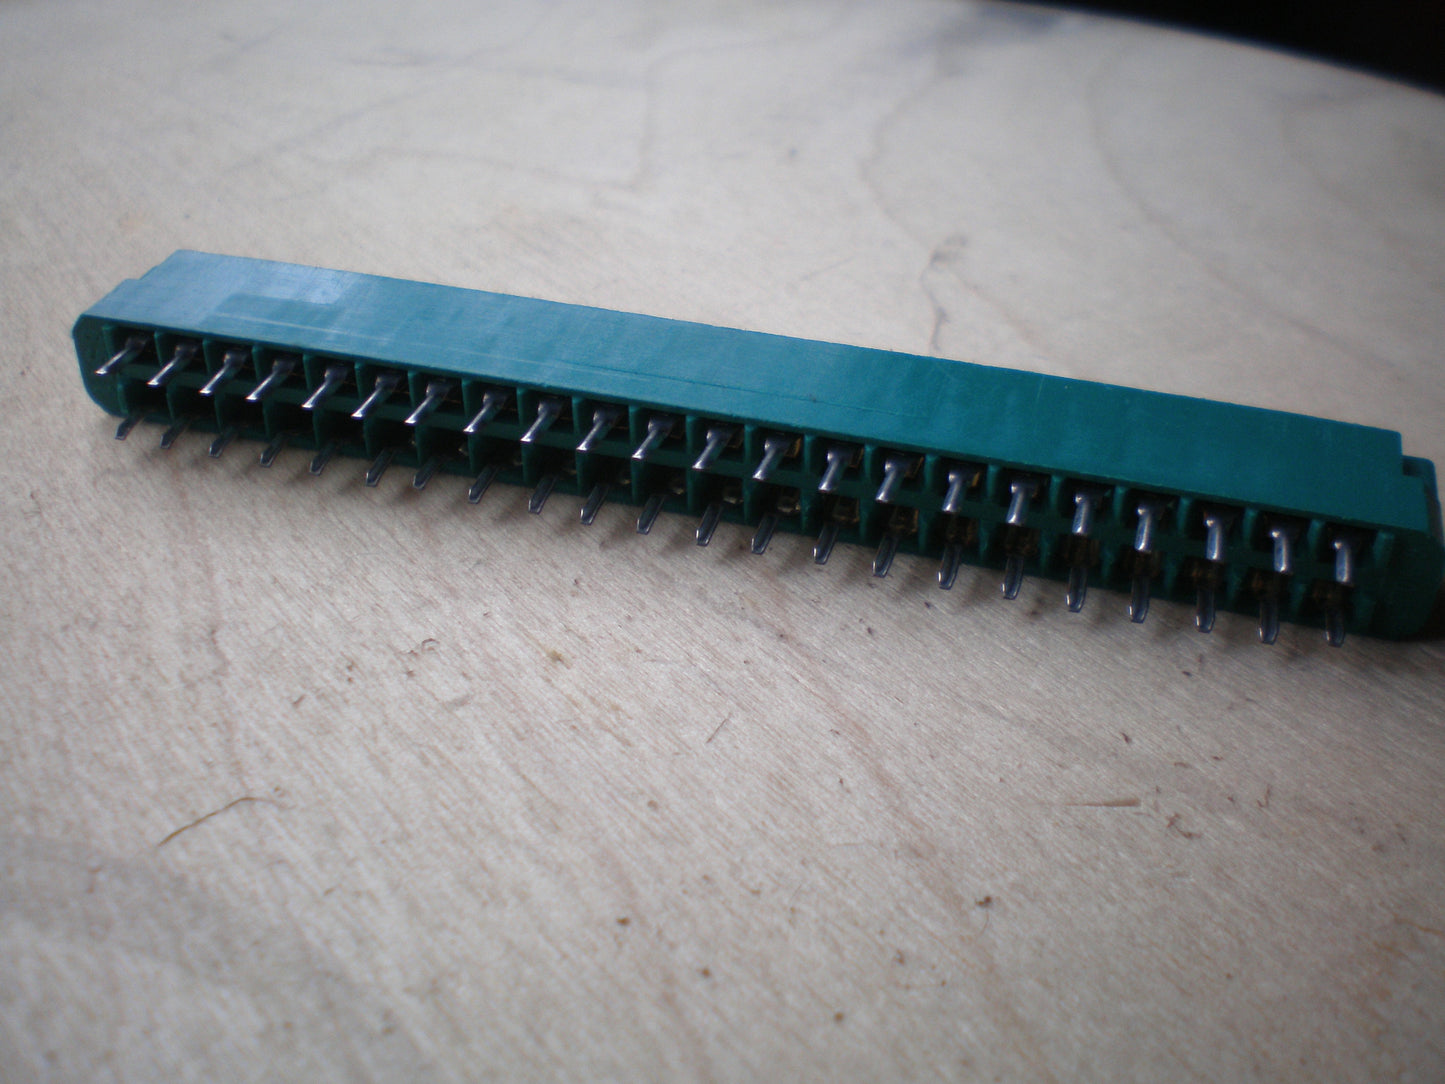 3.96mm / 0.156'' 44 way pcb edge connectors solder pins